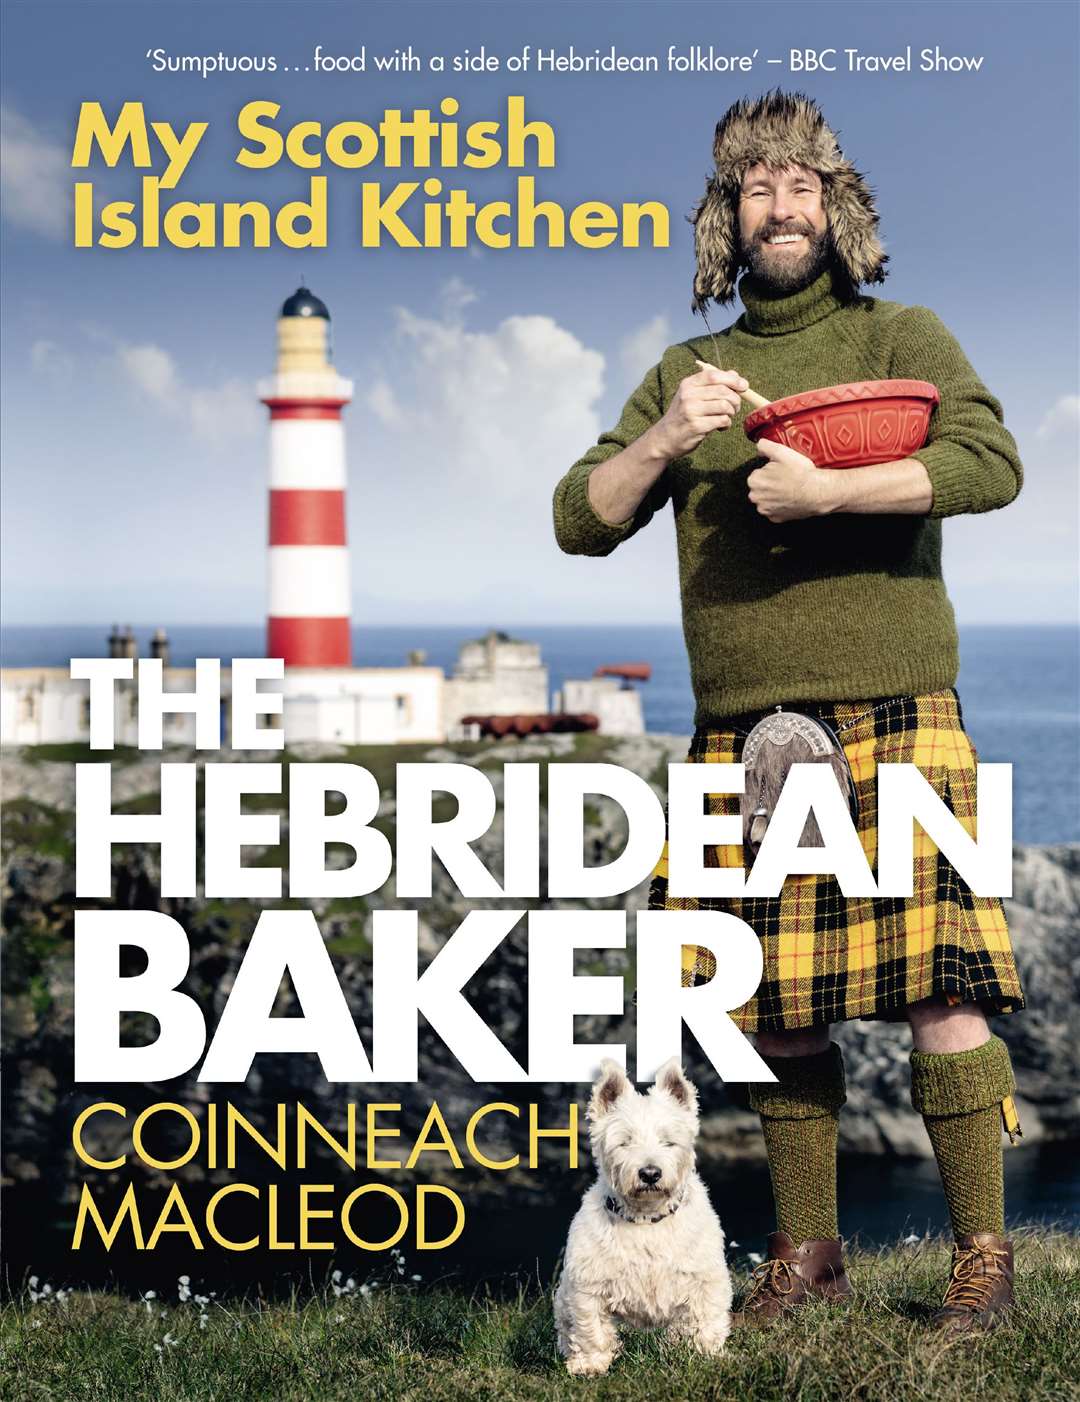 lThe Hebridean Baker Coinneach MacLeod's new book.